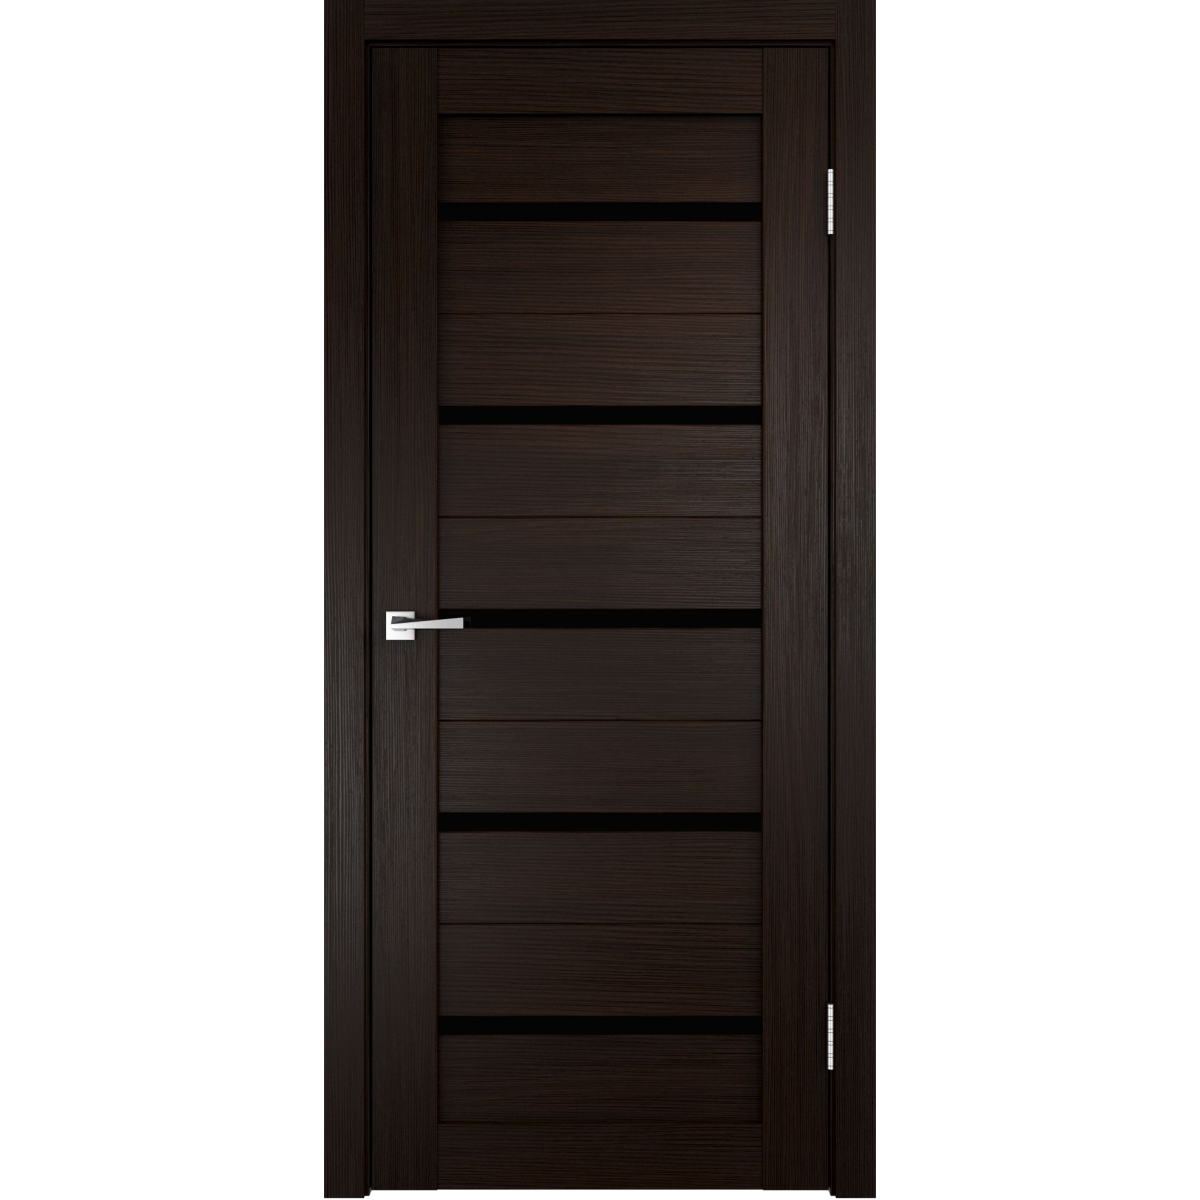 Дверь межкомнатная остеклённая Дюплекс/Фортуна 90x200 см, ПВХ, искусственный шпон, цвет венге